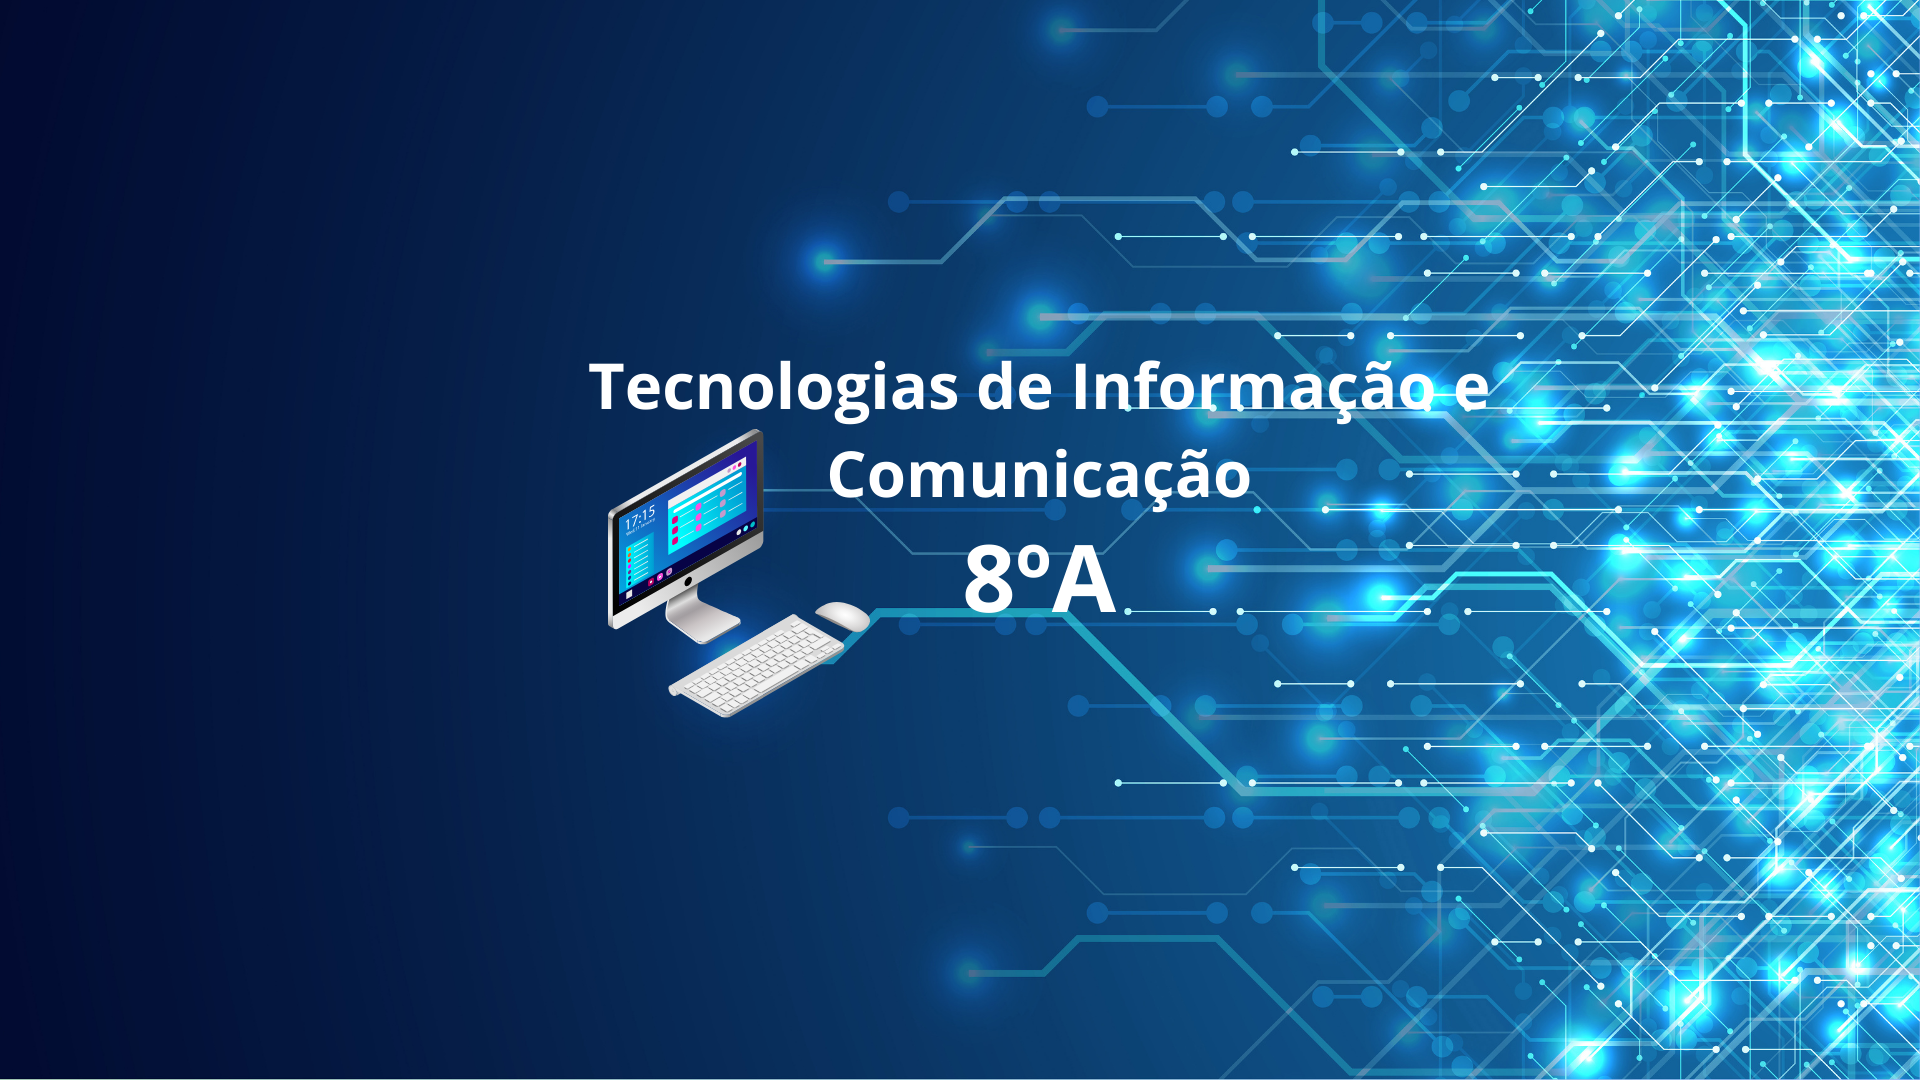 8A - Tecnologias de Informação e Comunicação